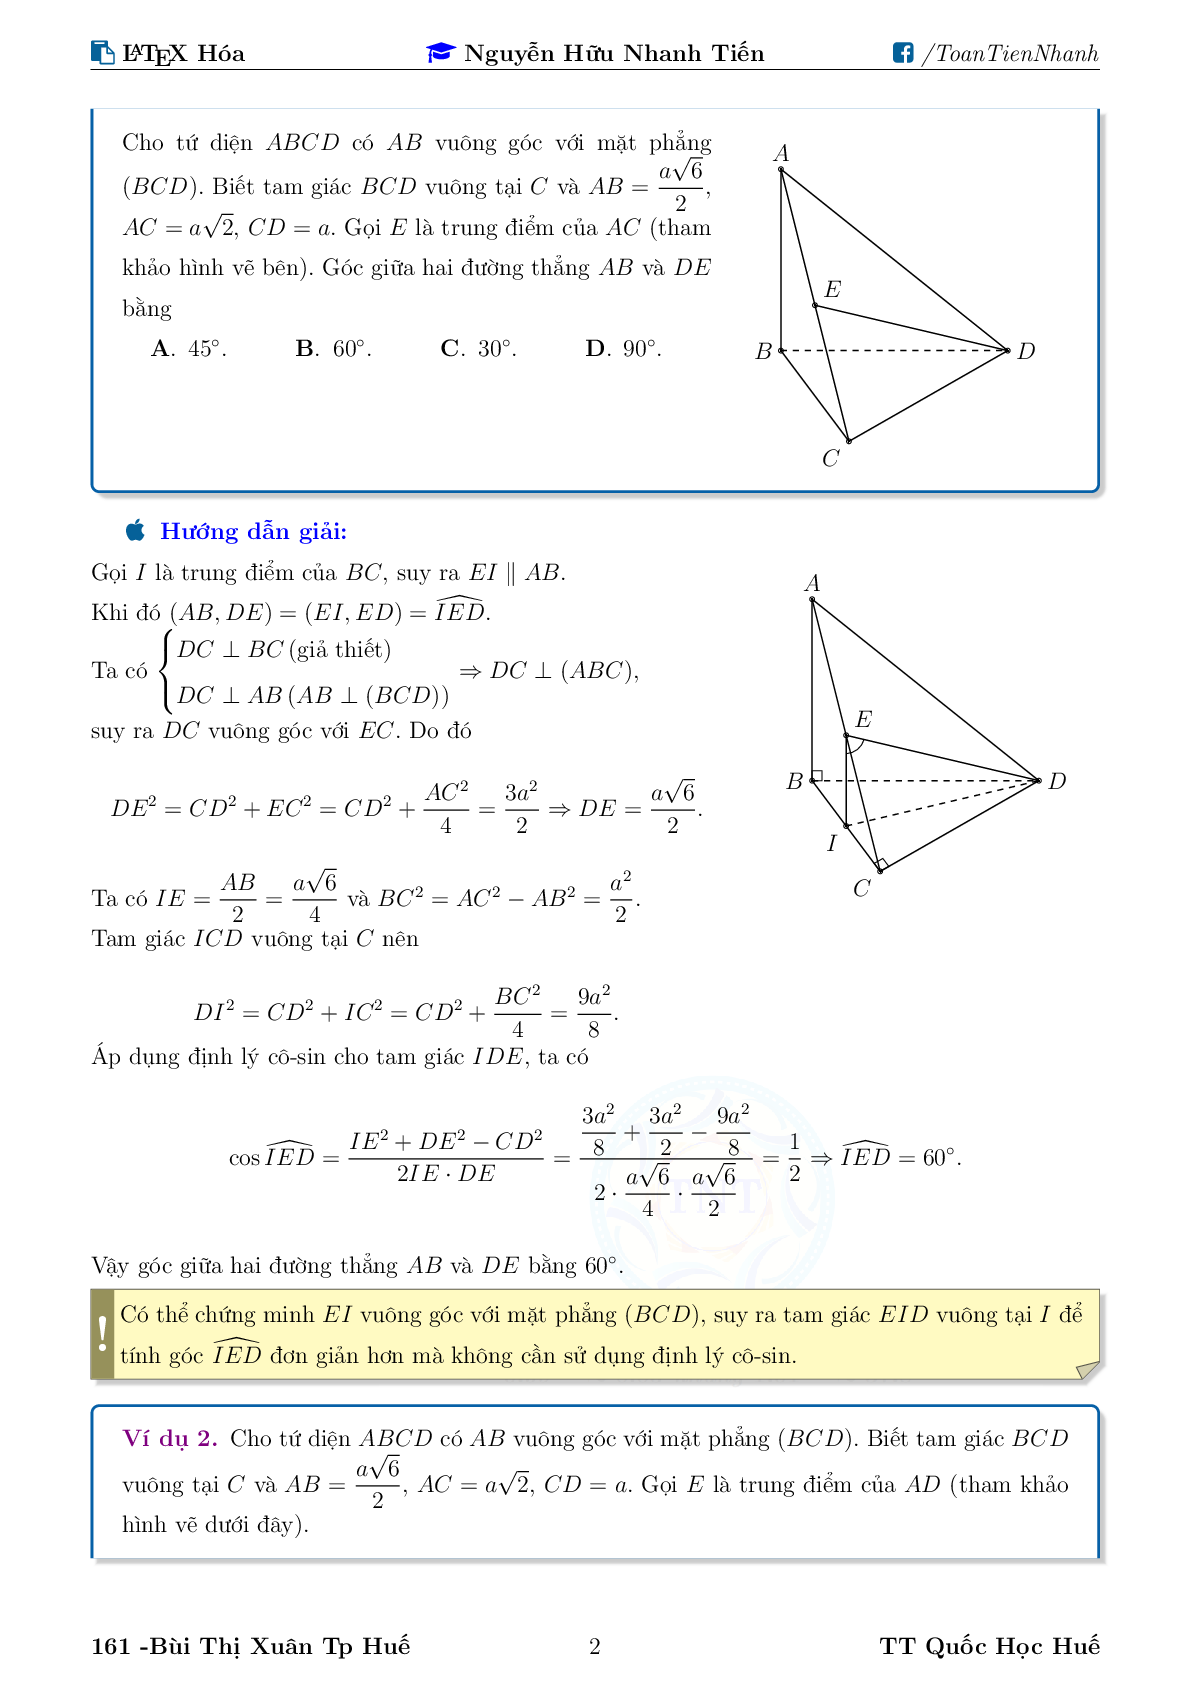 Chuyên đề về góc và khoảng cách trong không gian (trang 2)